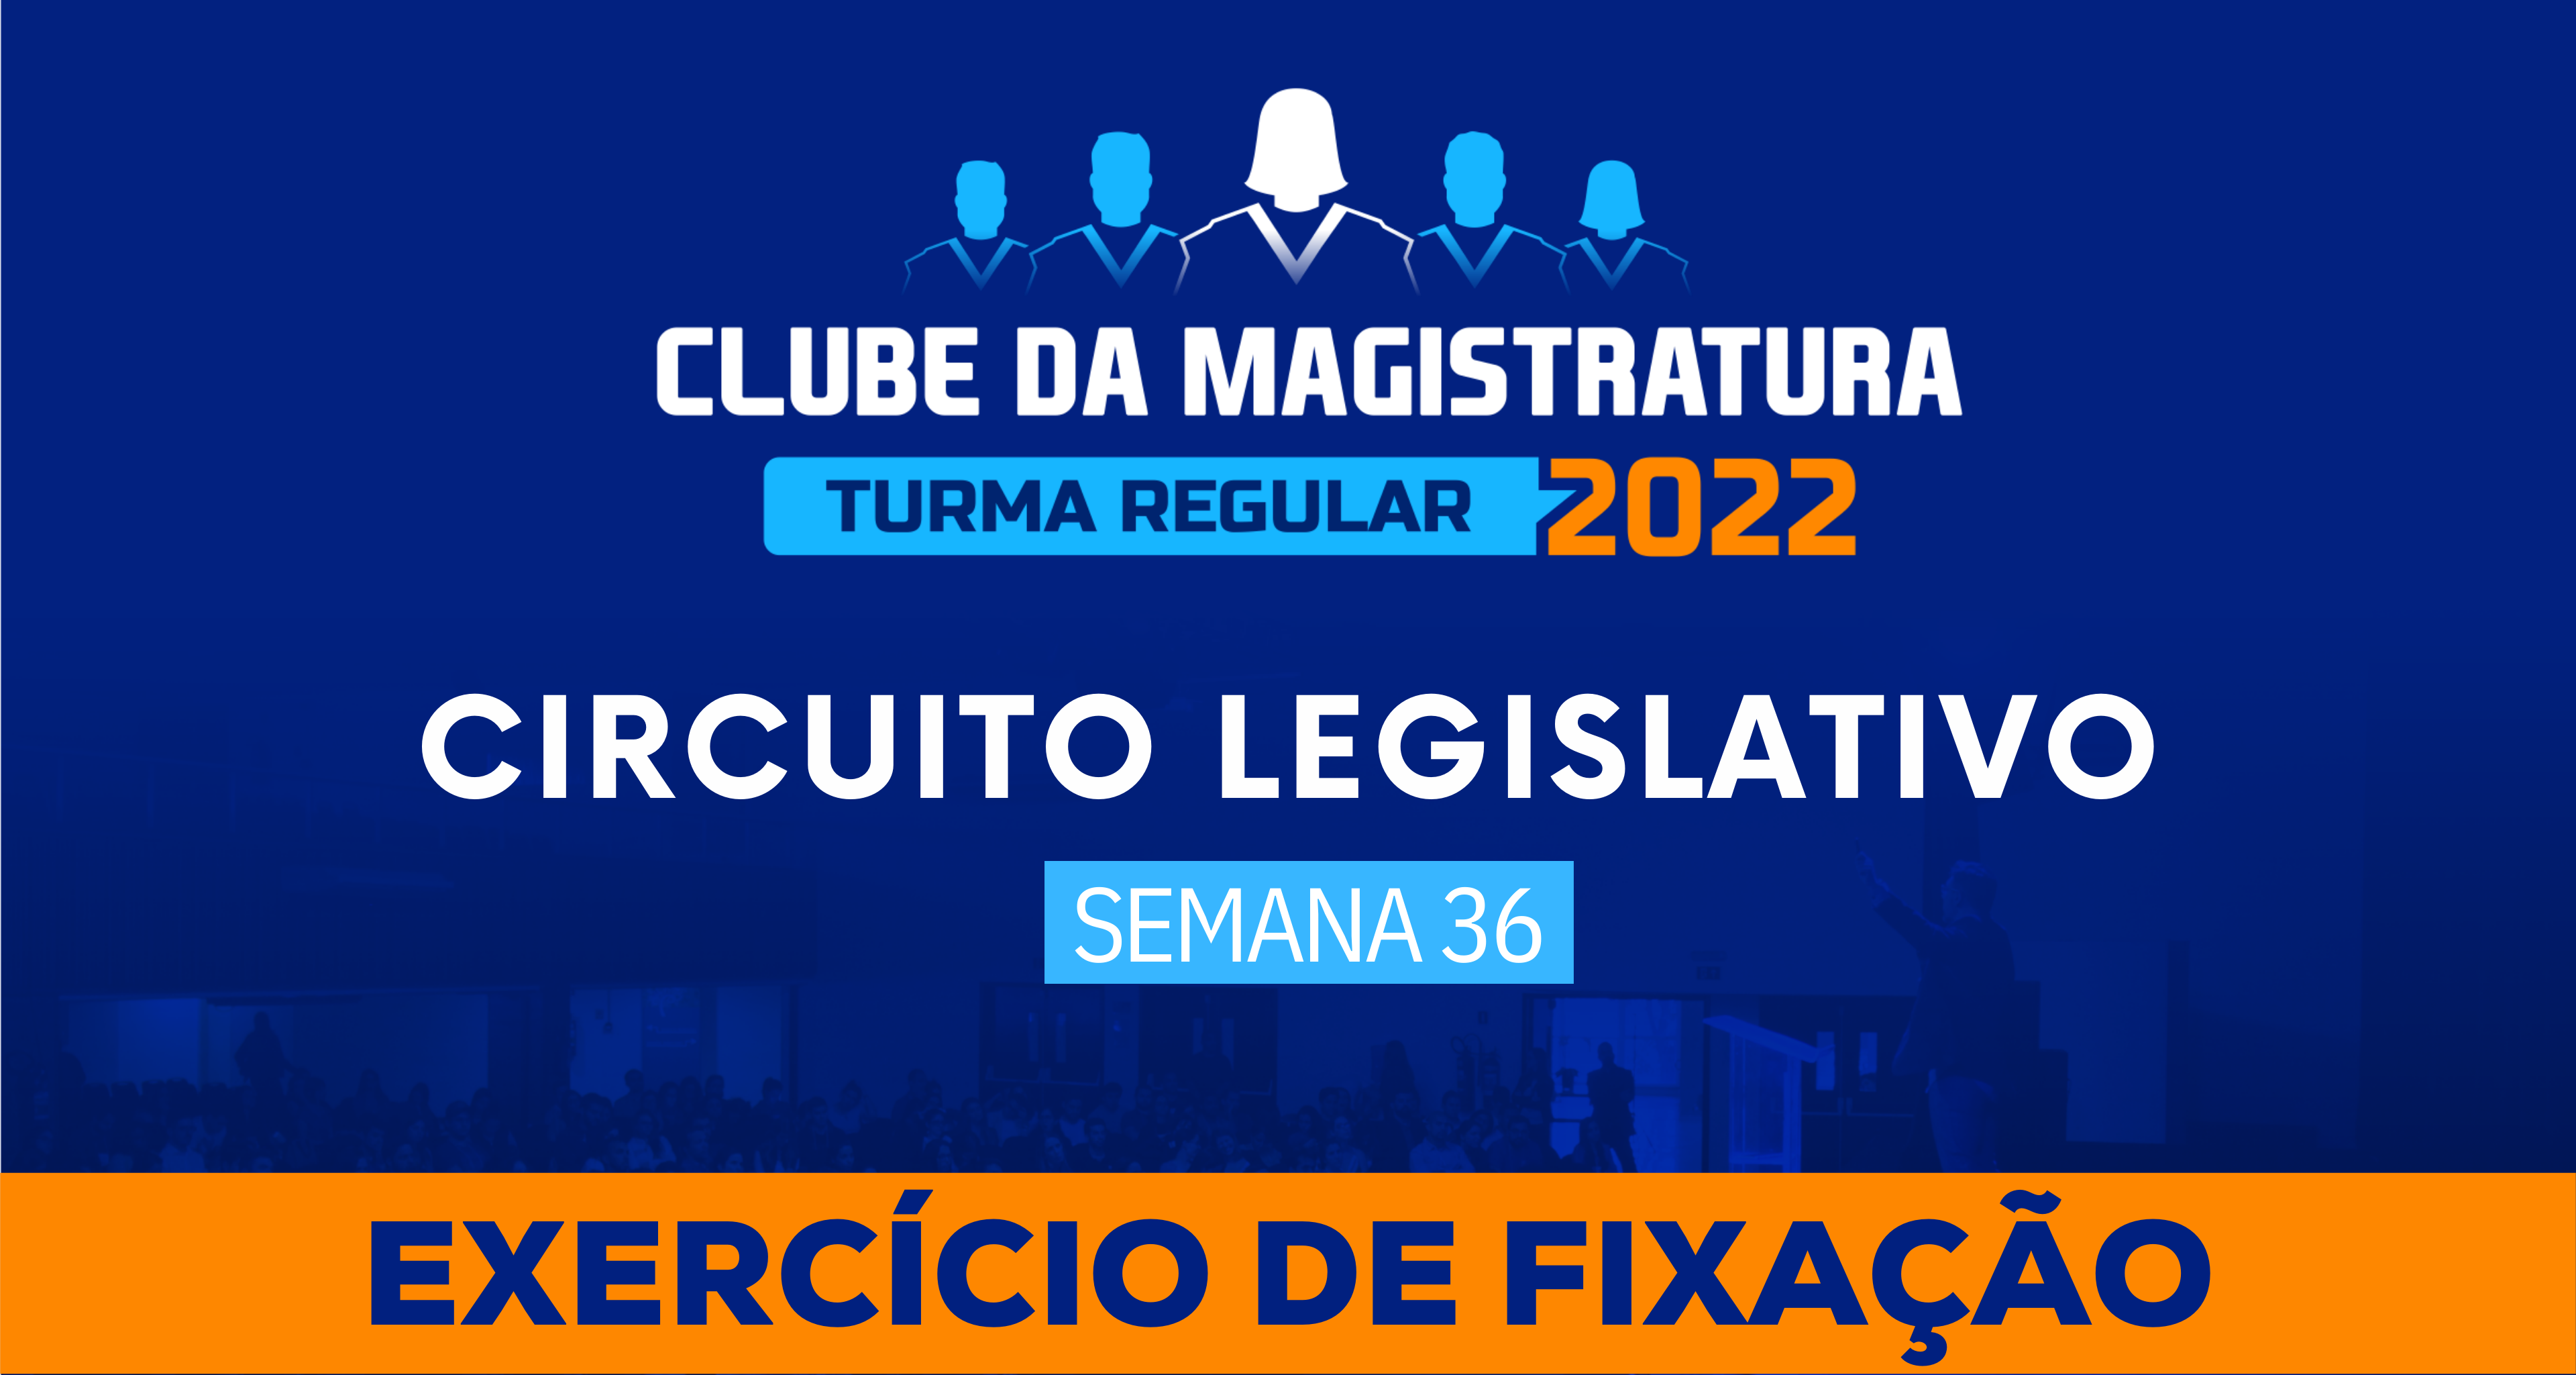 Circuito Legislativo 2022.1 (Clube da Magistratura - Semana 36)